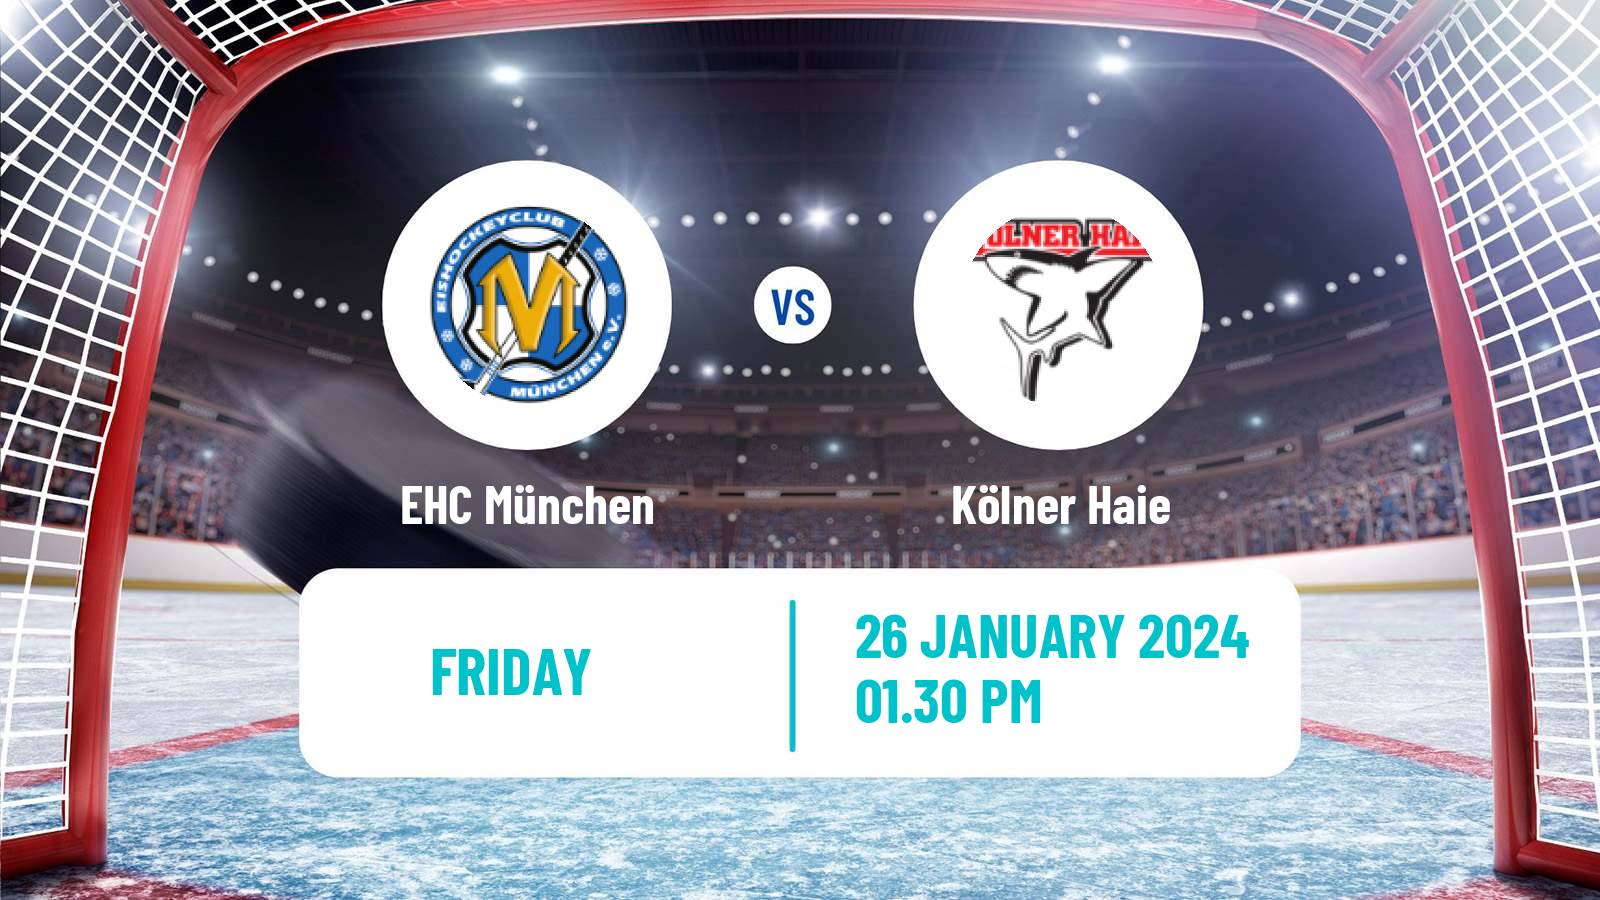 Hockey German Ice Hockey League EHC München - Kölner Haie